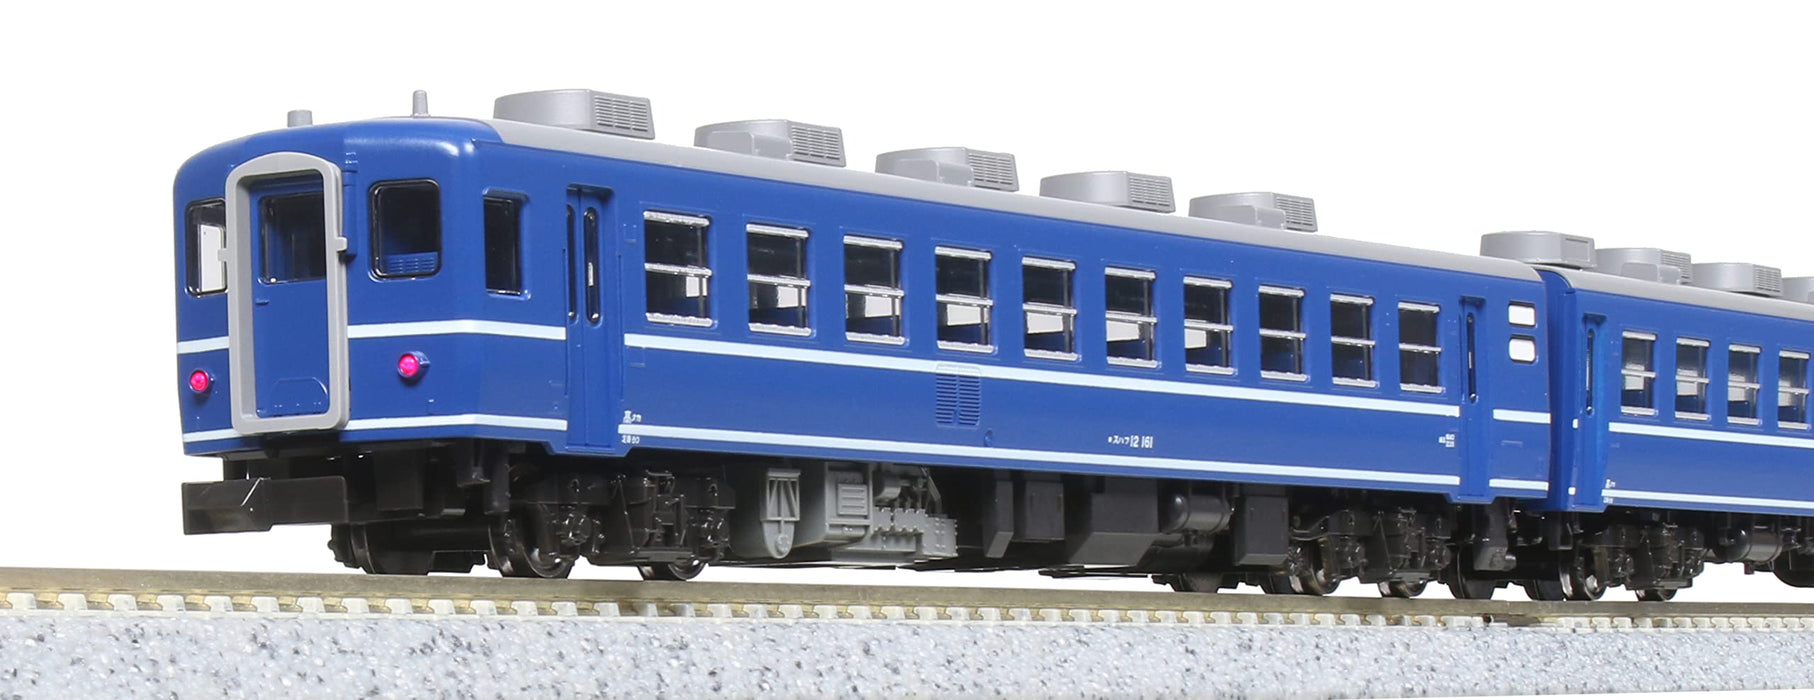 Kato N Gauge 7 Car Set - JR East Takasaki Passenger Model 10-1720 in Blue